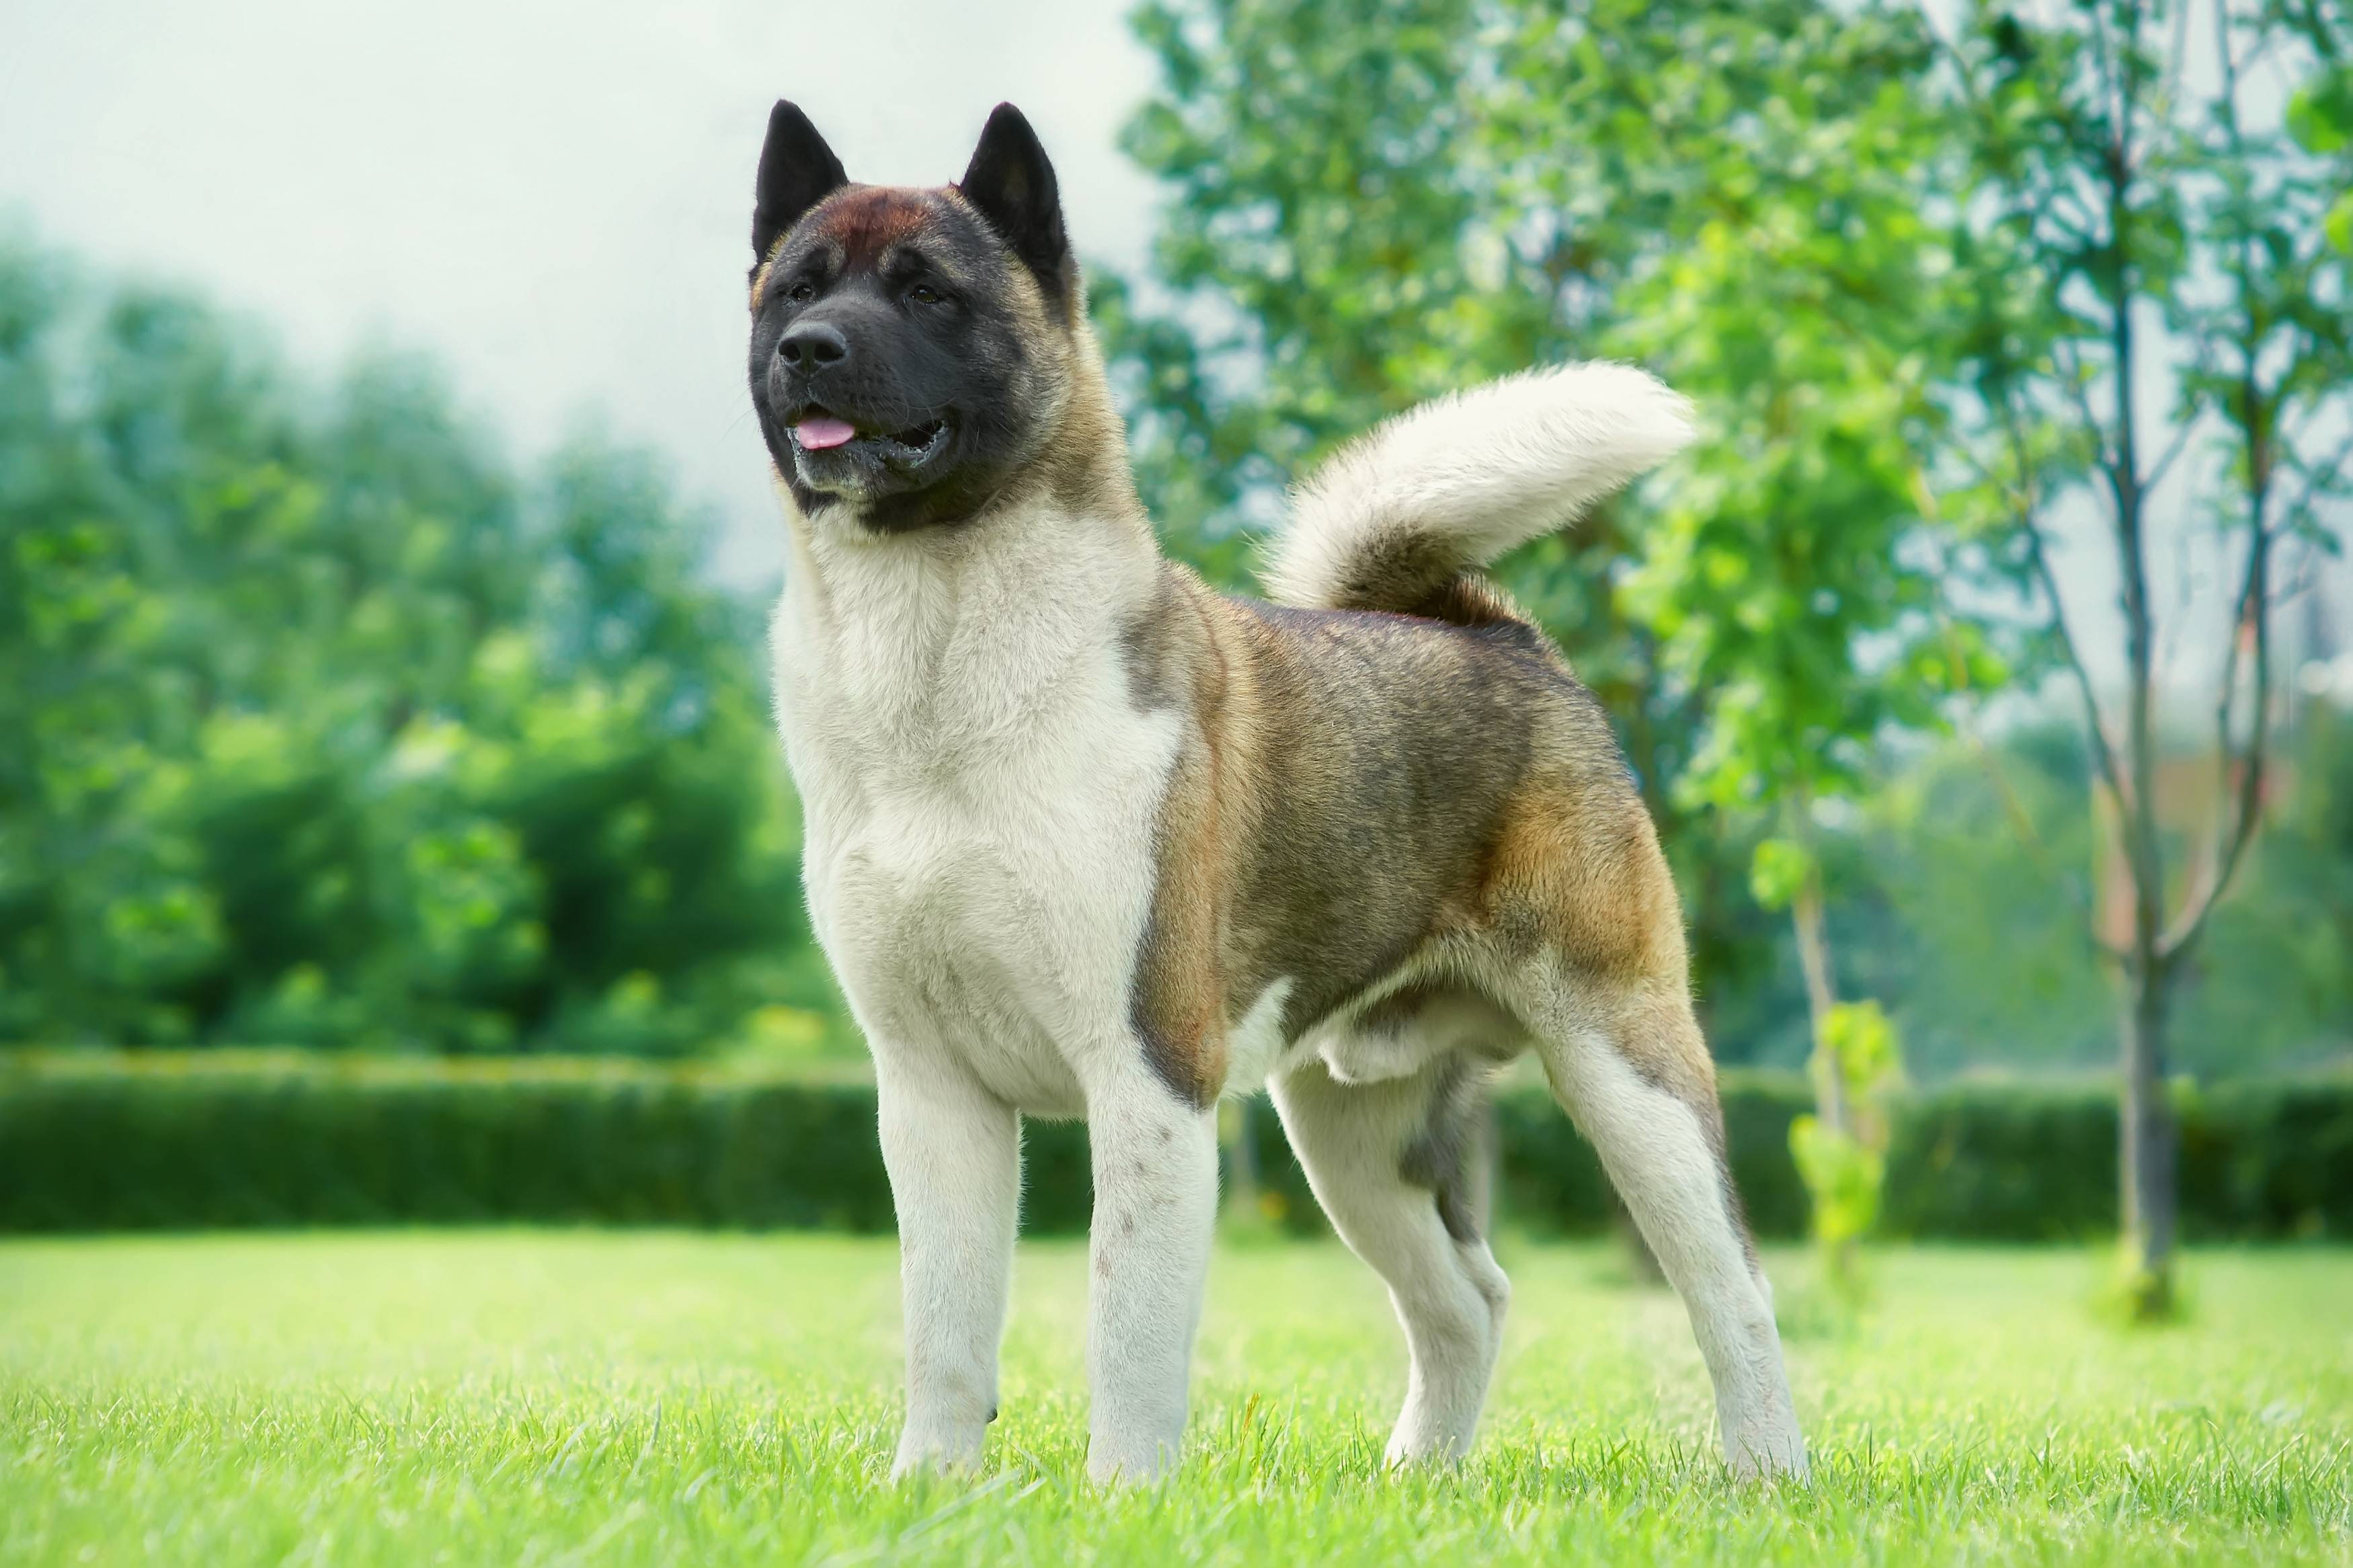 Американская акита: характеристика породы, описание и фото большой японской собаки, цена щенка + отзывы владельцев